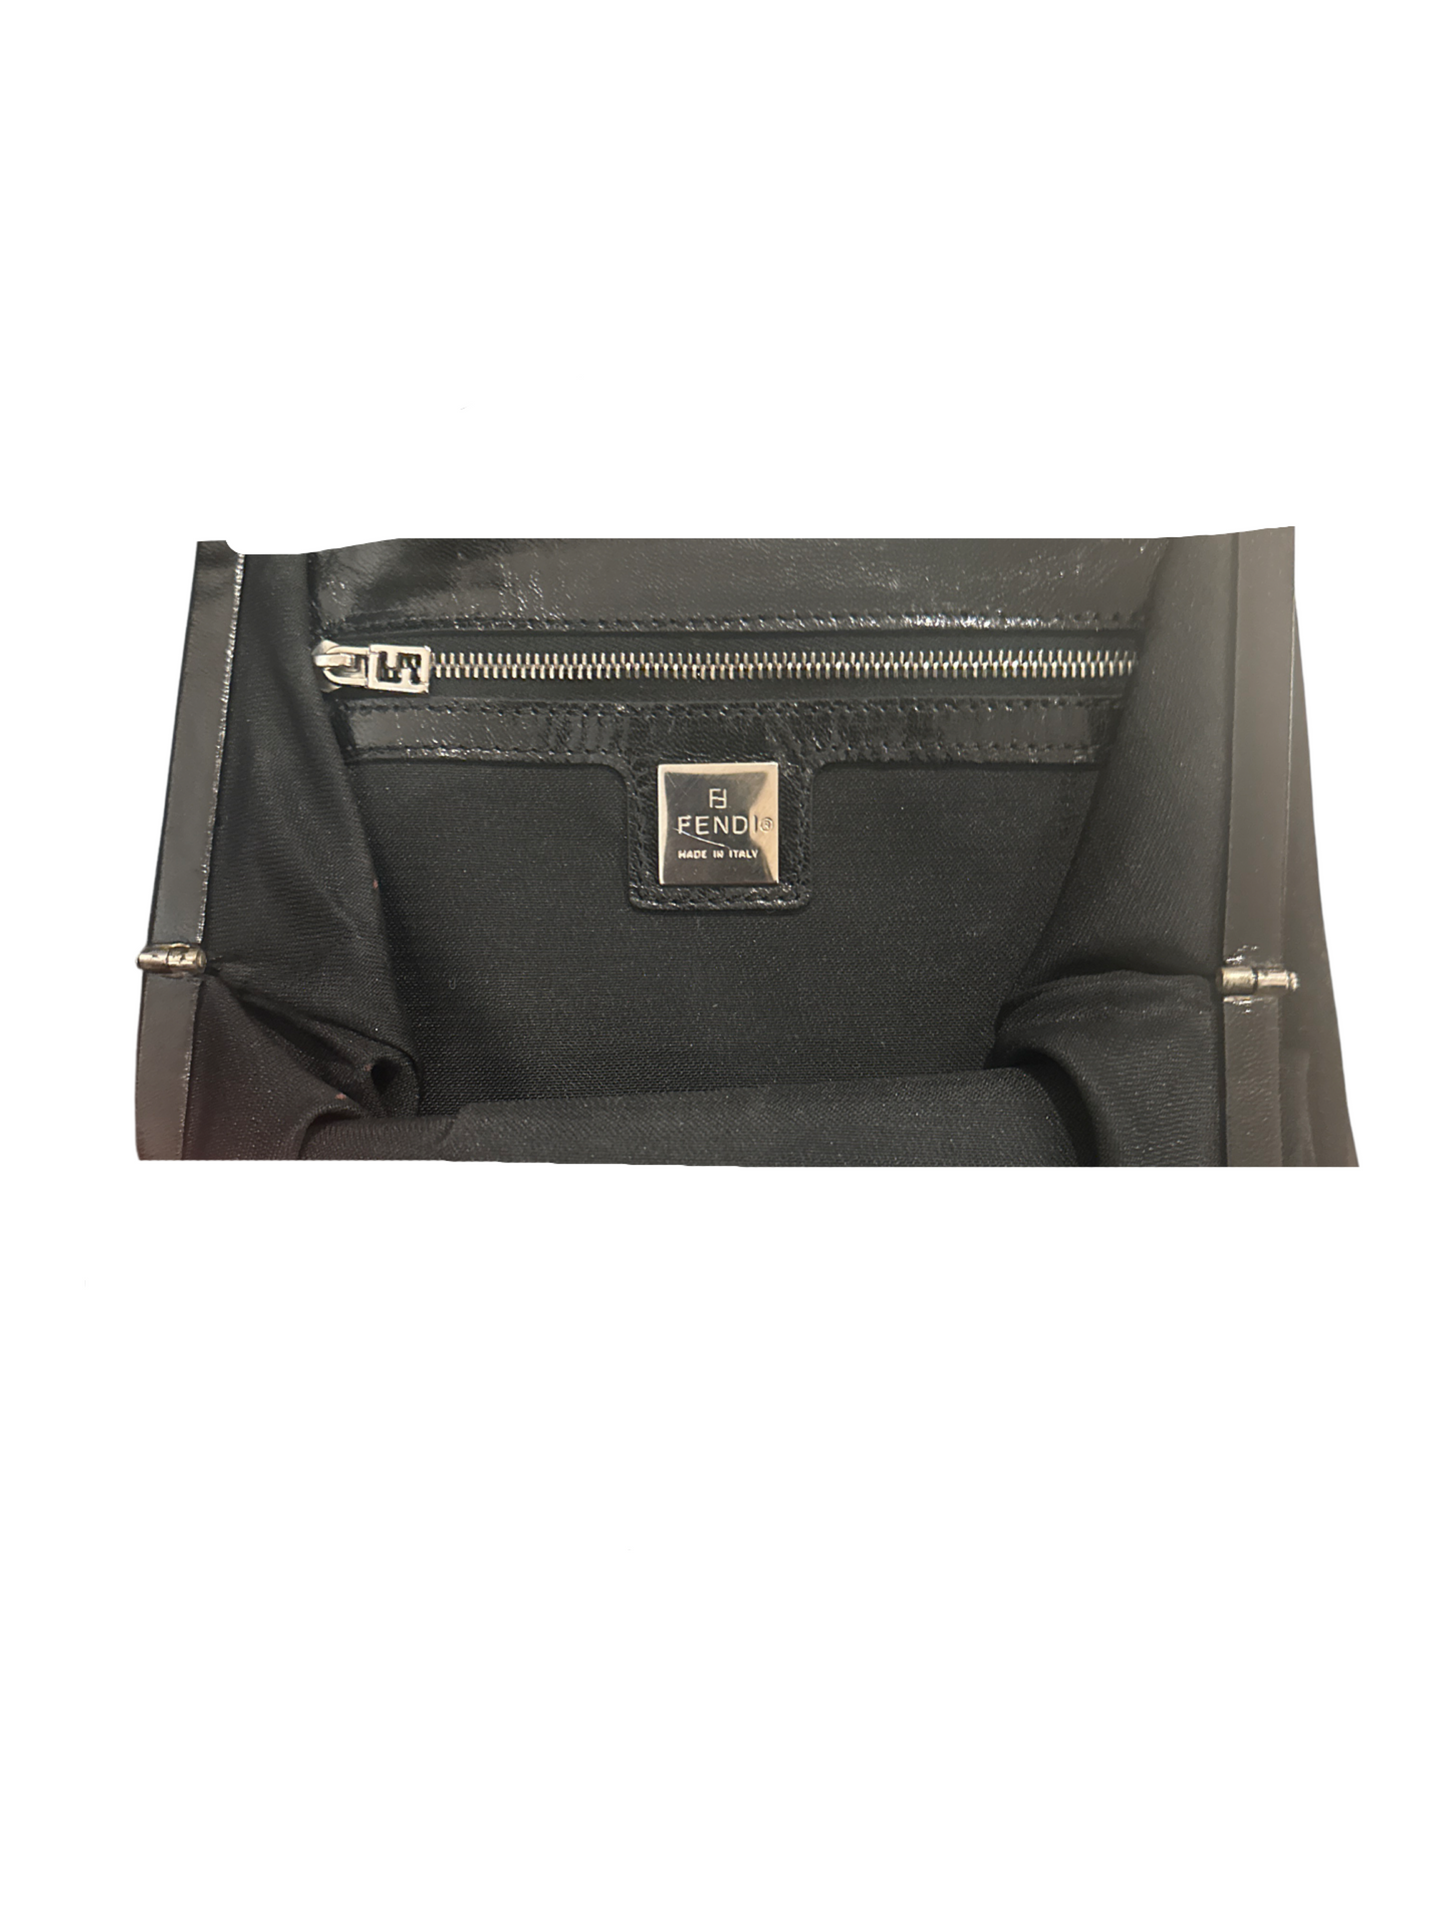 Fendi Black Evening Handbag